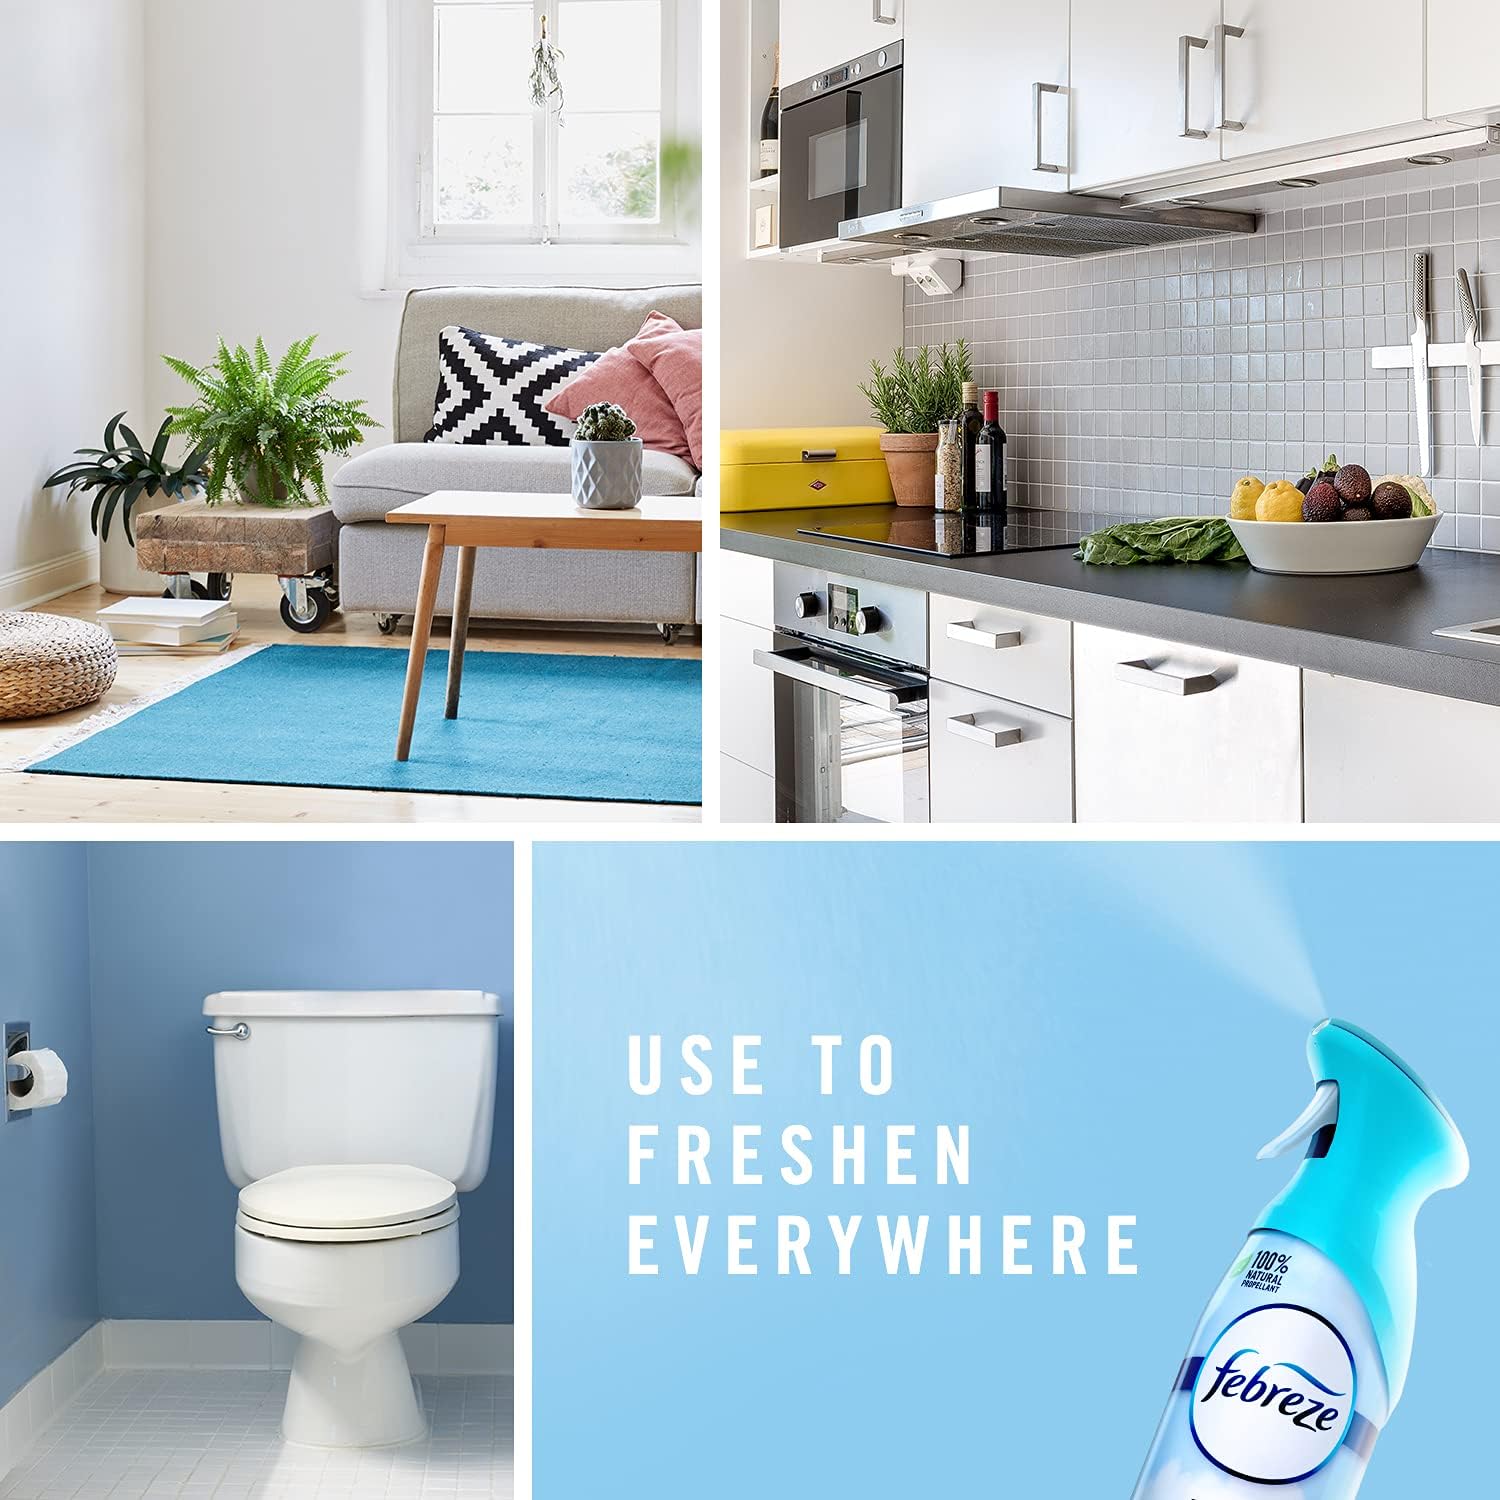 Febreze Air Effects Odor-Fighting Air Freshener Berry & Bramble, 8.8 oz. Aerosol Can : Health & Household